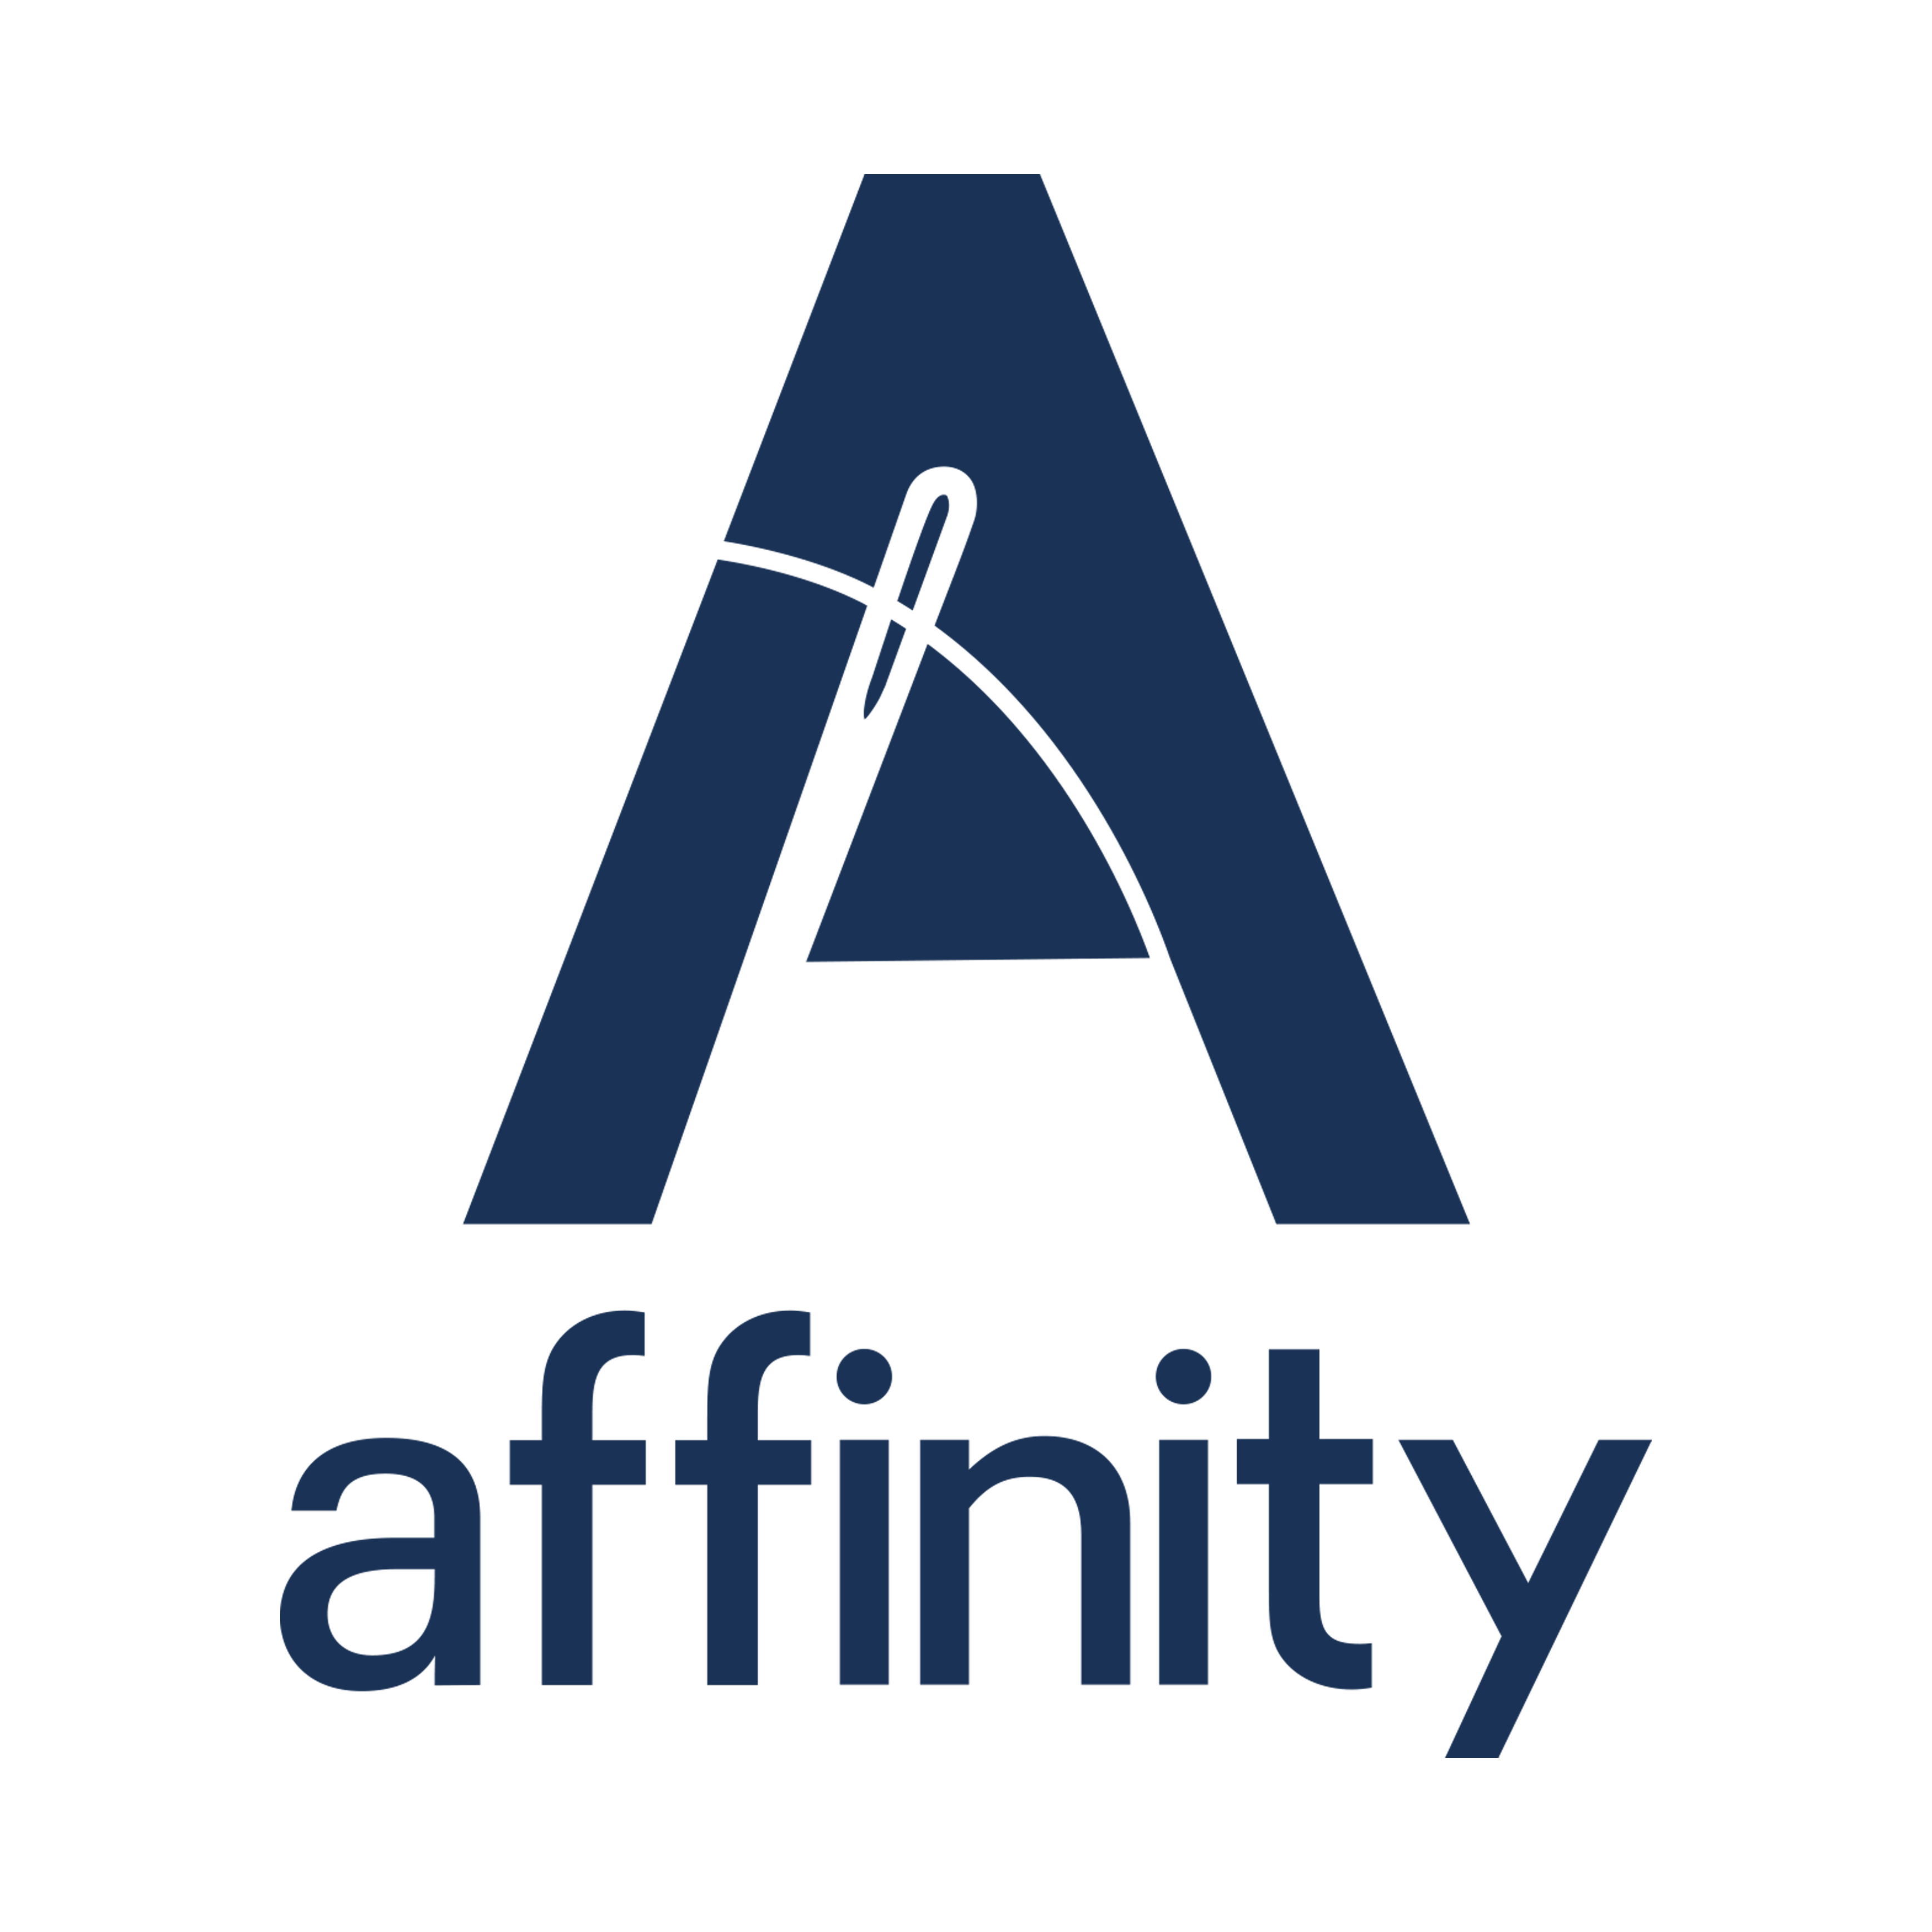 Affinitytrading - Affinity Foundation Option Course